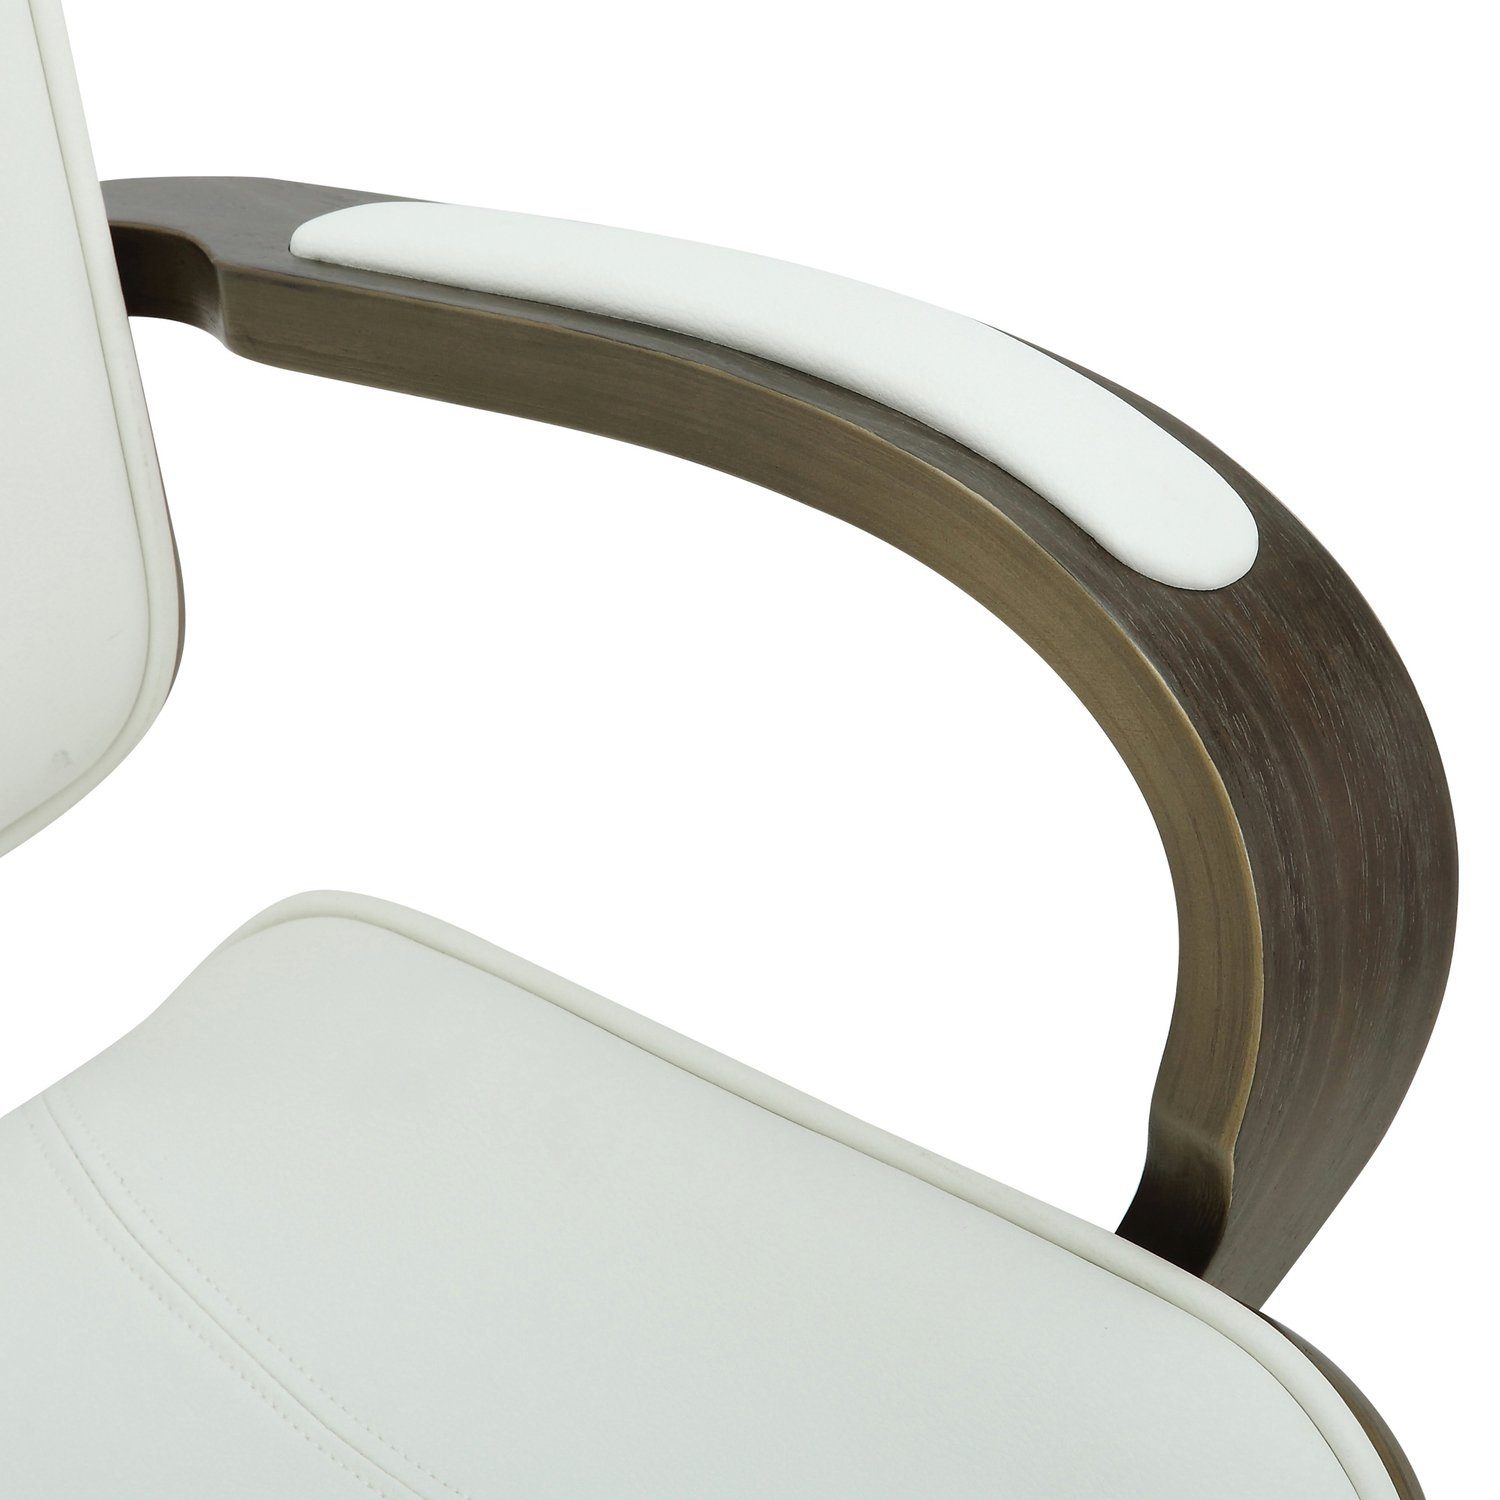 TPFLiving Bürostuhl Daytona mit bequemer Gestell: - Kunstleder chrom höhenverstellbar und Bürostuhl weiß/grau XXL), (Schreibtischstuhl, Rückenlehne - Chefsessel, Metall drehbar 360° Sitzfläche: Drehstuhl